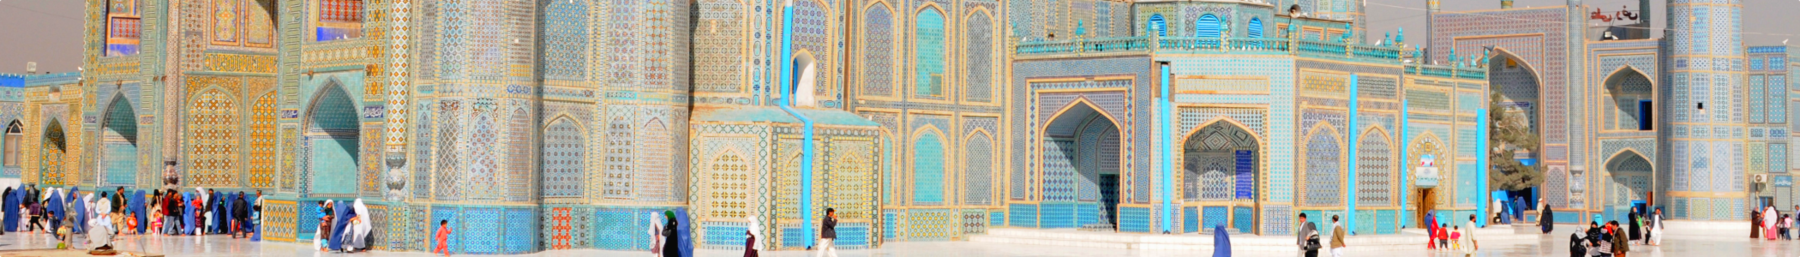 Mazar-e-Sharif banner Blue Mosque.png